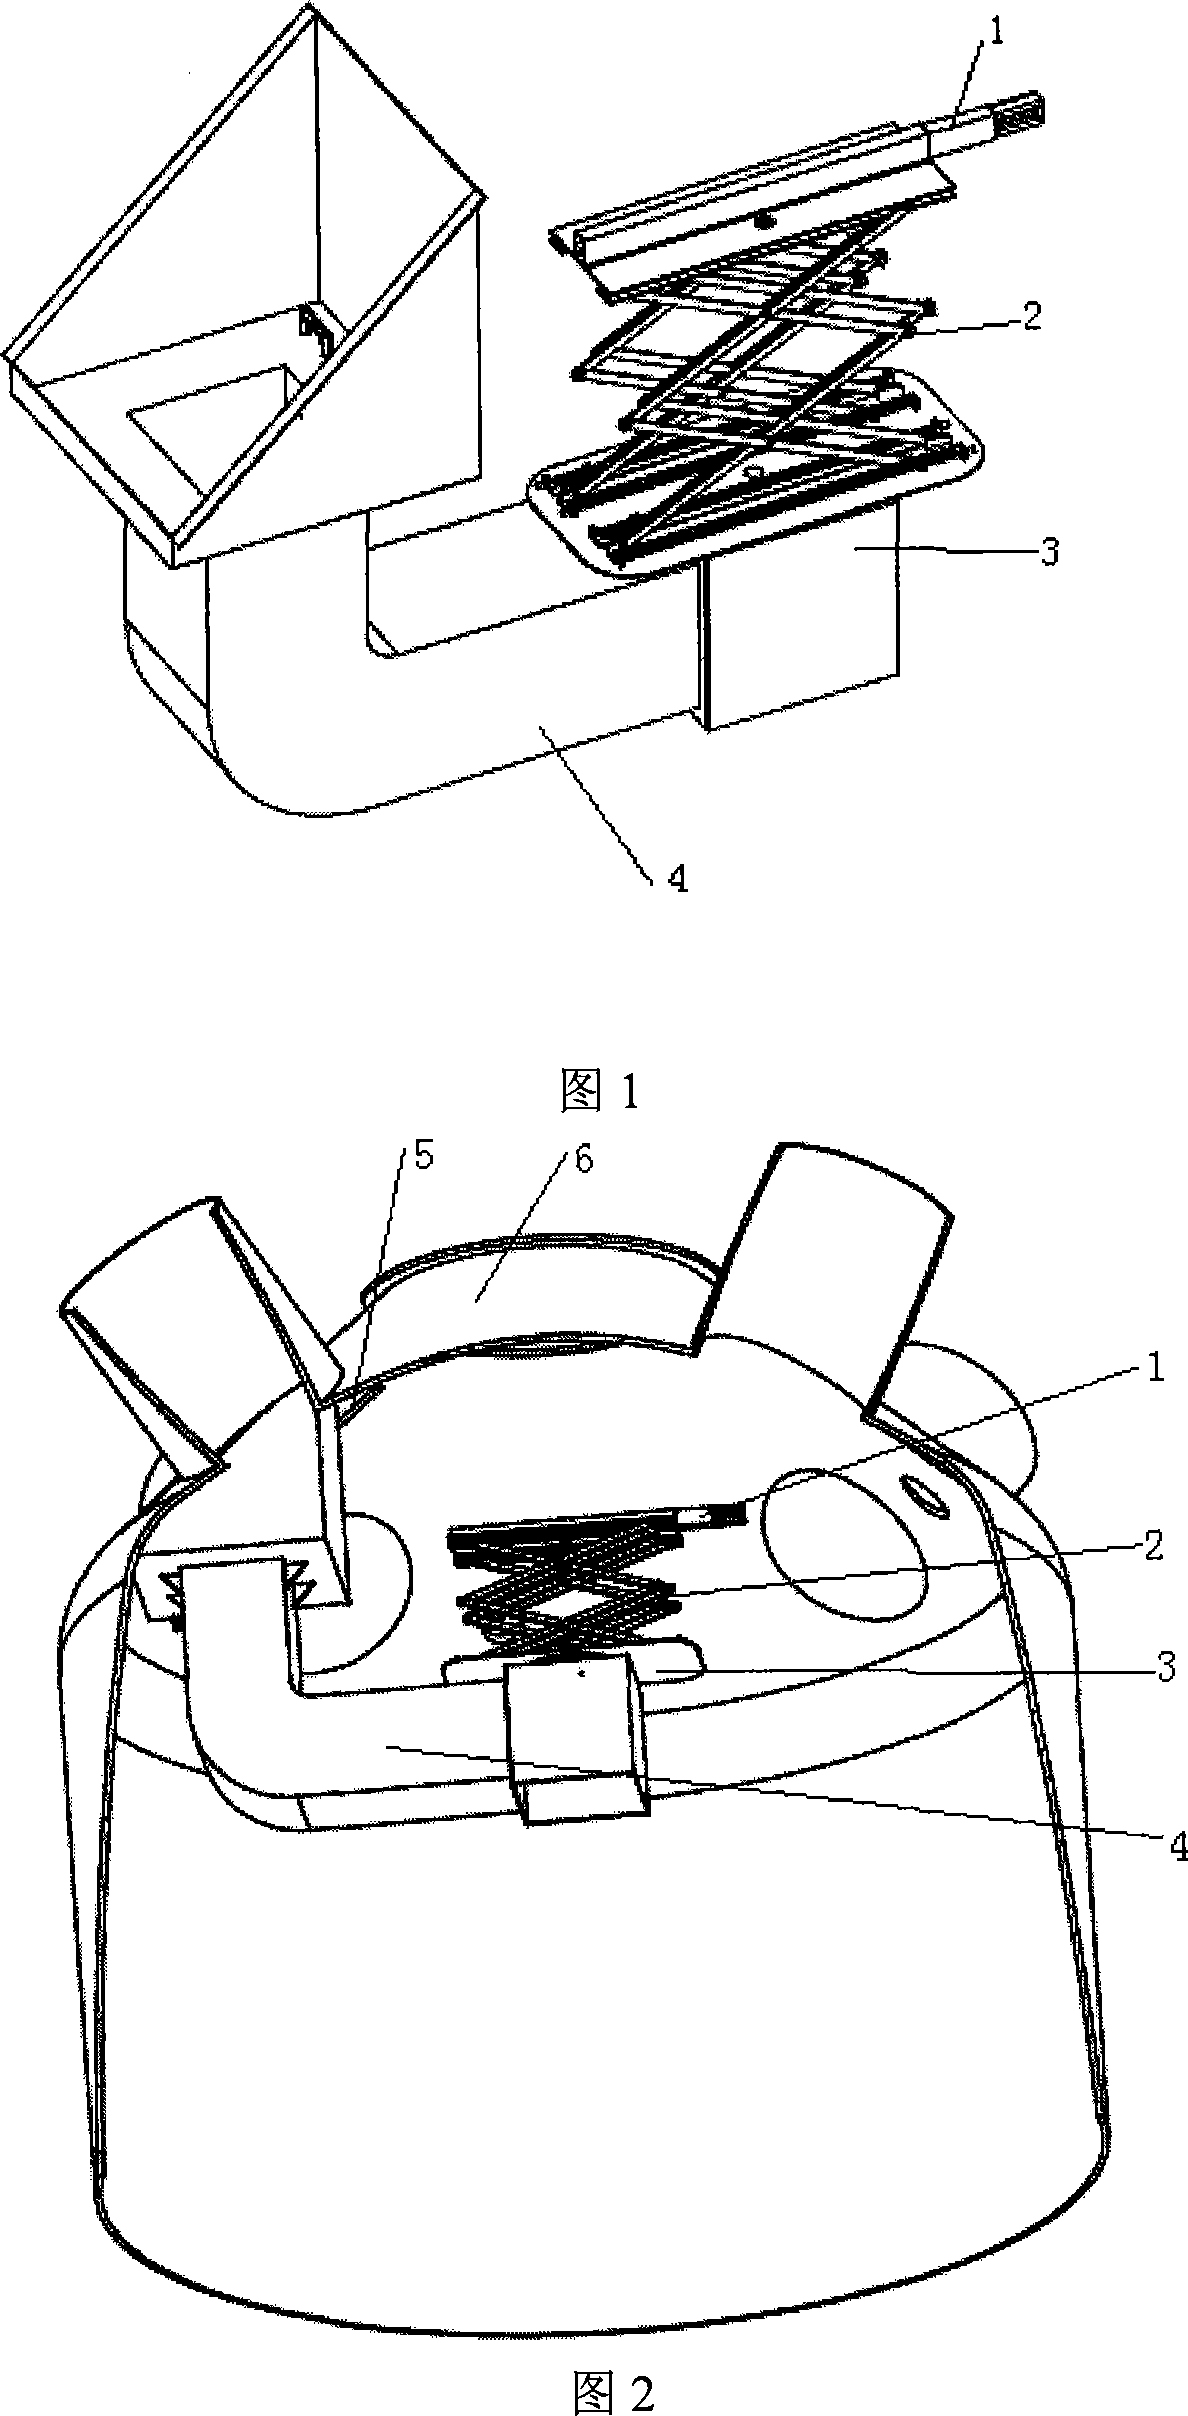 Blast-furnace furnace-arch maintenance robot movement mechanism